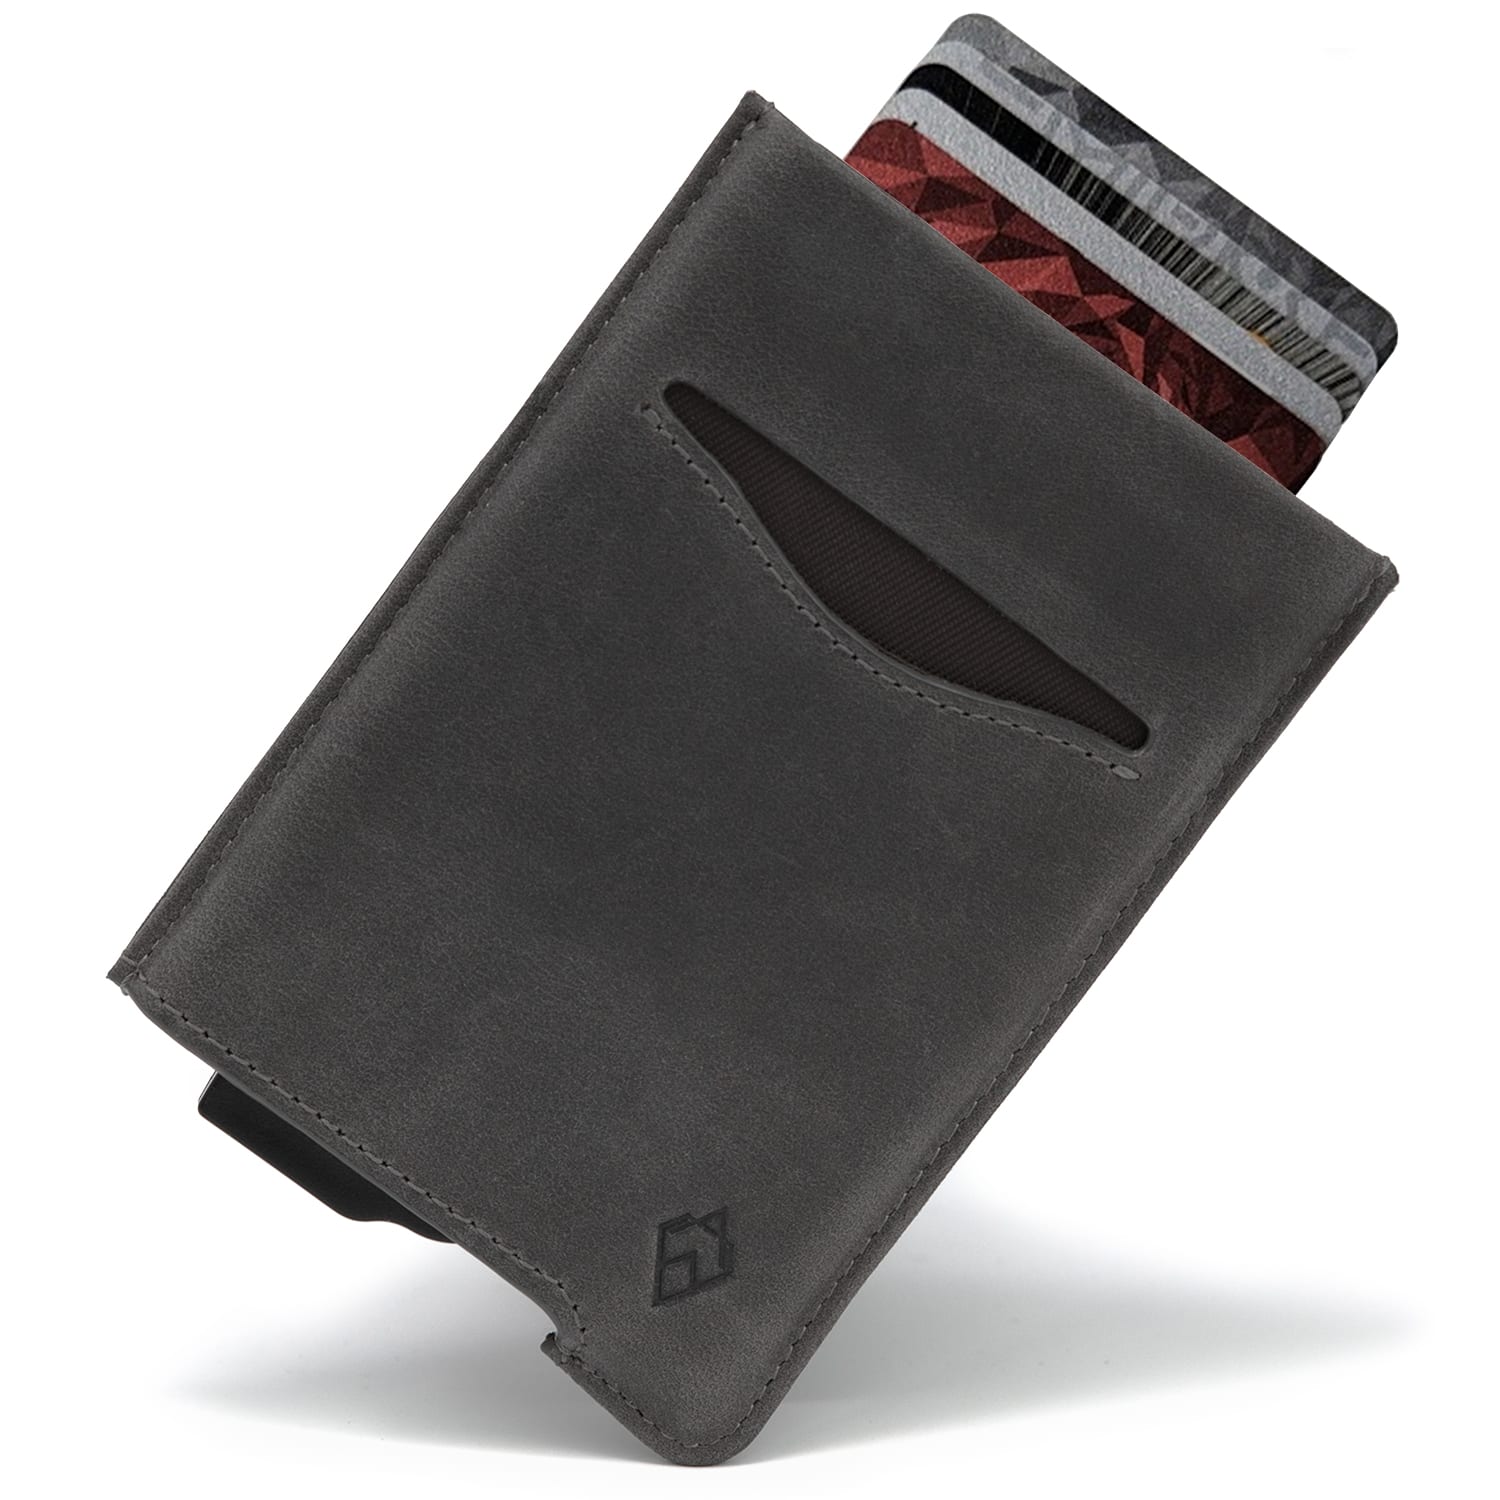 Slate Grey RFID blocking credit card holder wallet pop up leather card holder like Andar Pilot Wallet